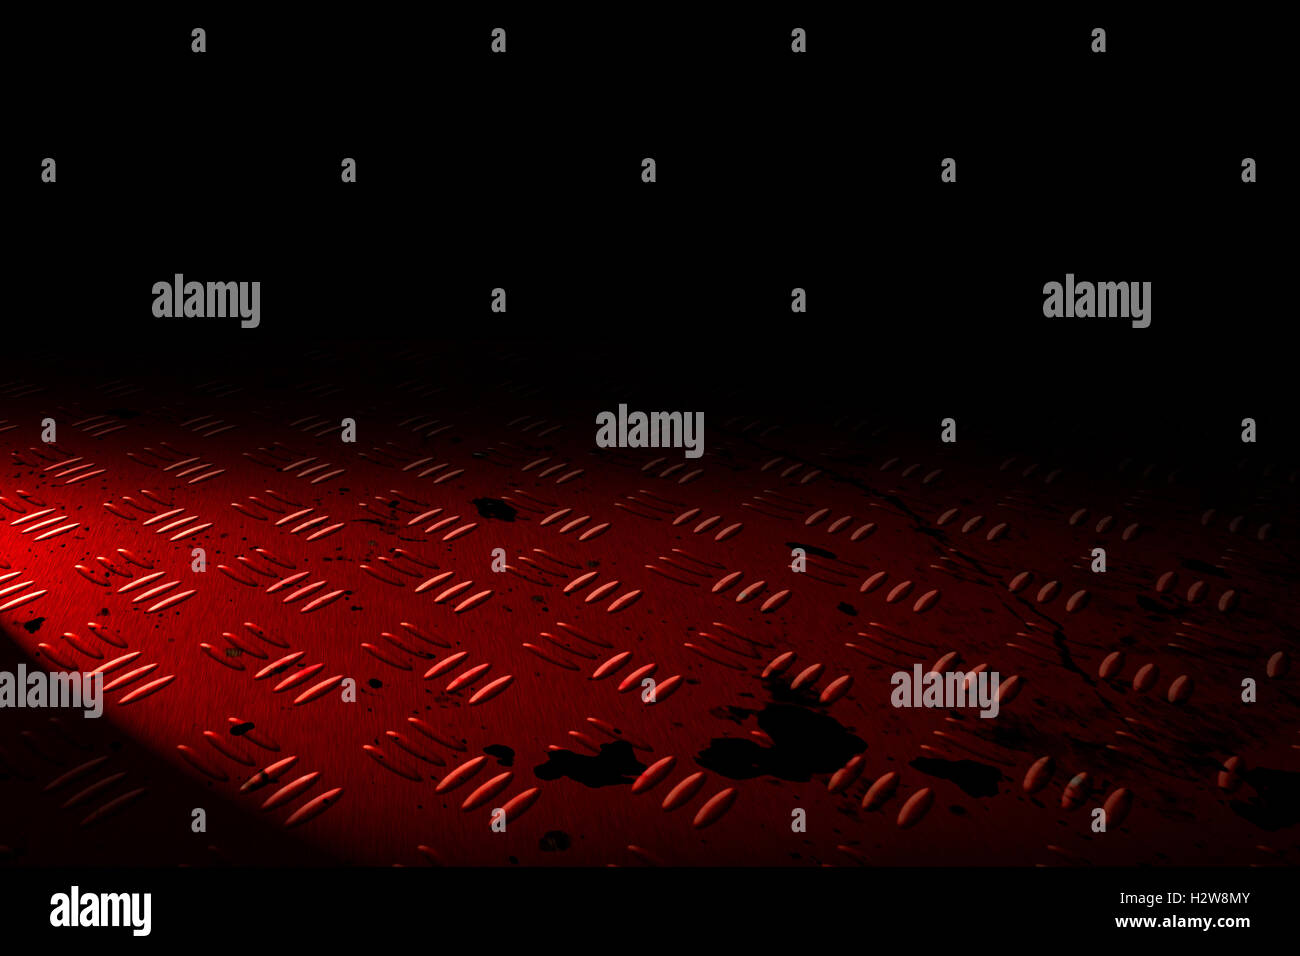 Placa de Diamante rojo con iluminación puntual en la sombra negra de fondo. Foto de stock